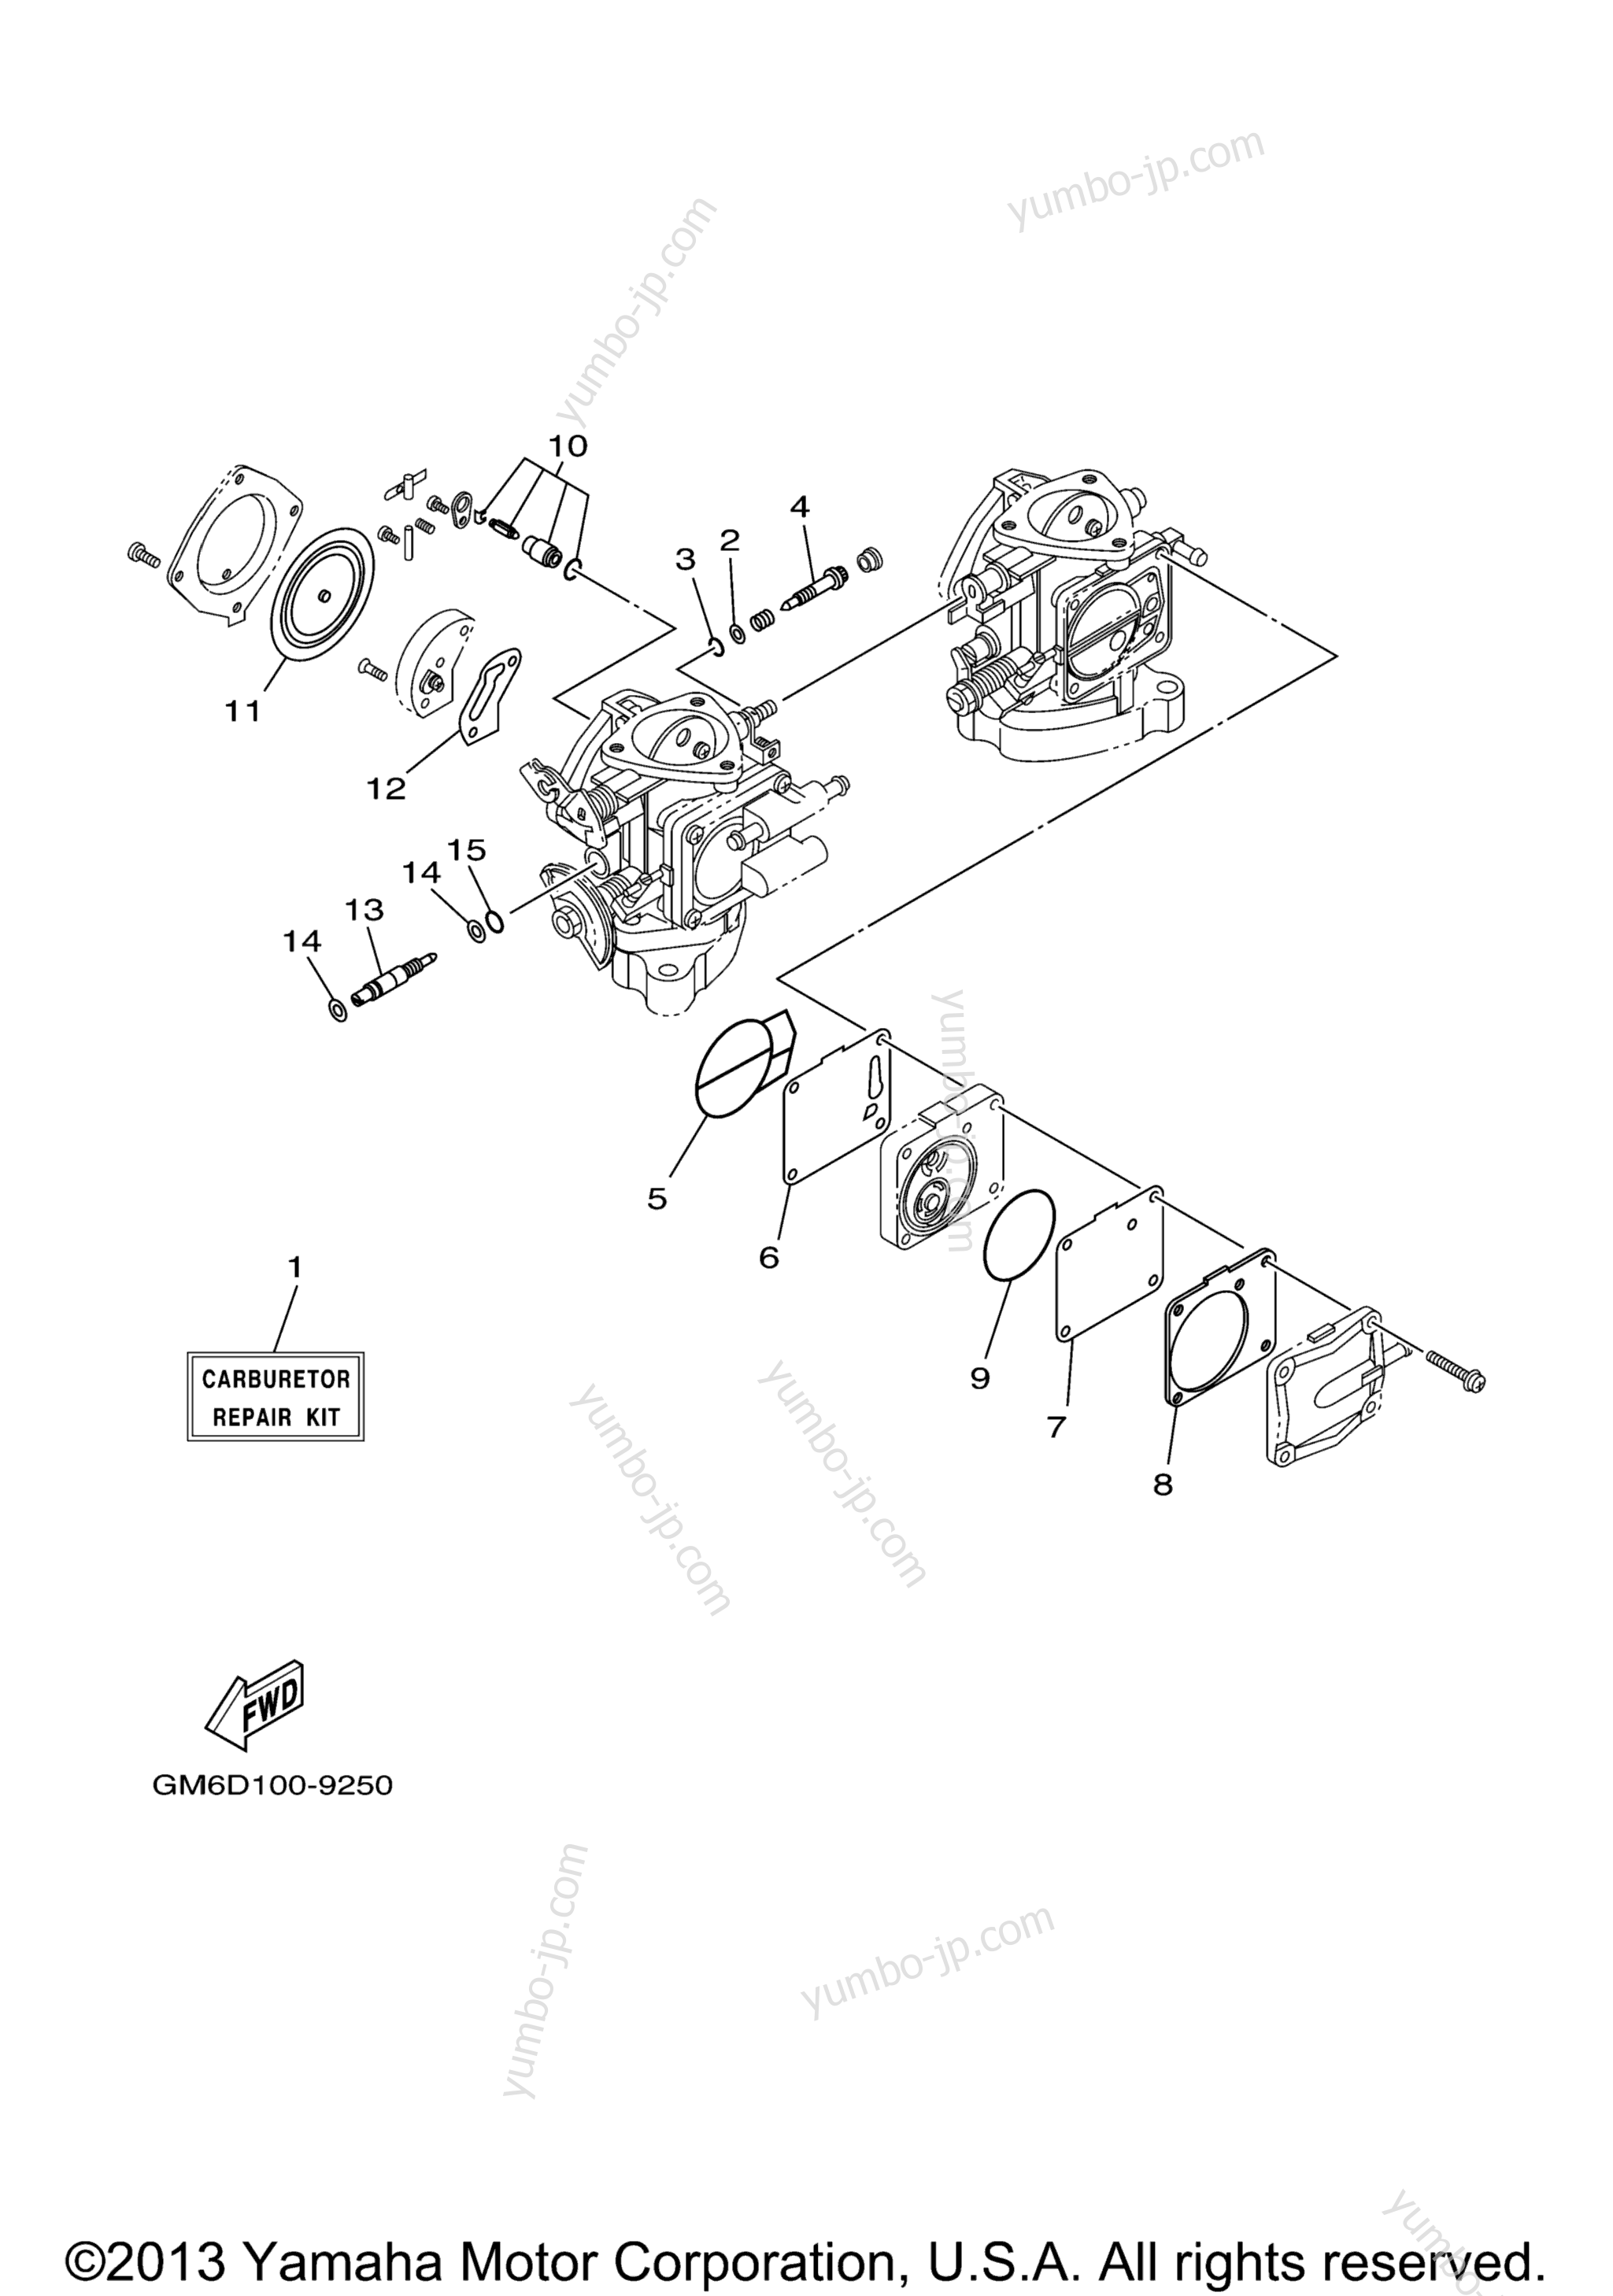 Repair Kit 2 для гидроциклов YAMAHA XL700 (XL700Z) 2001 г.